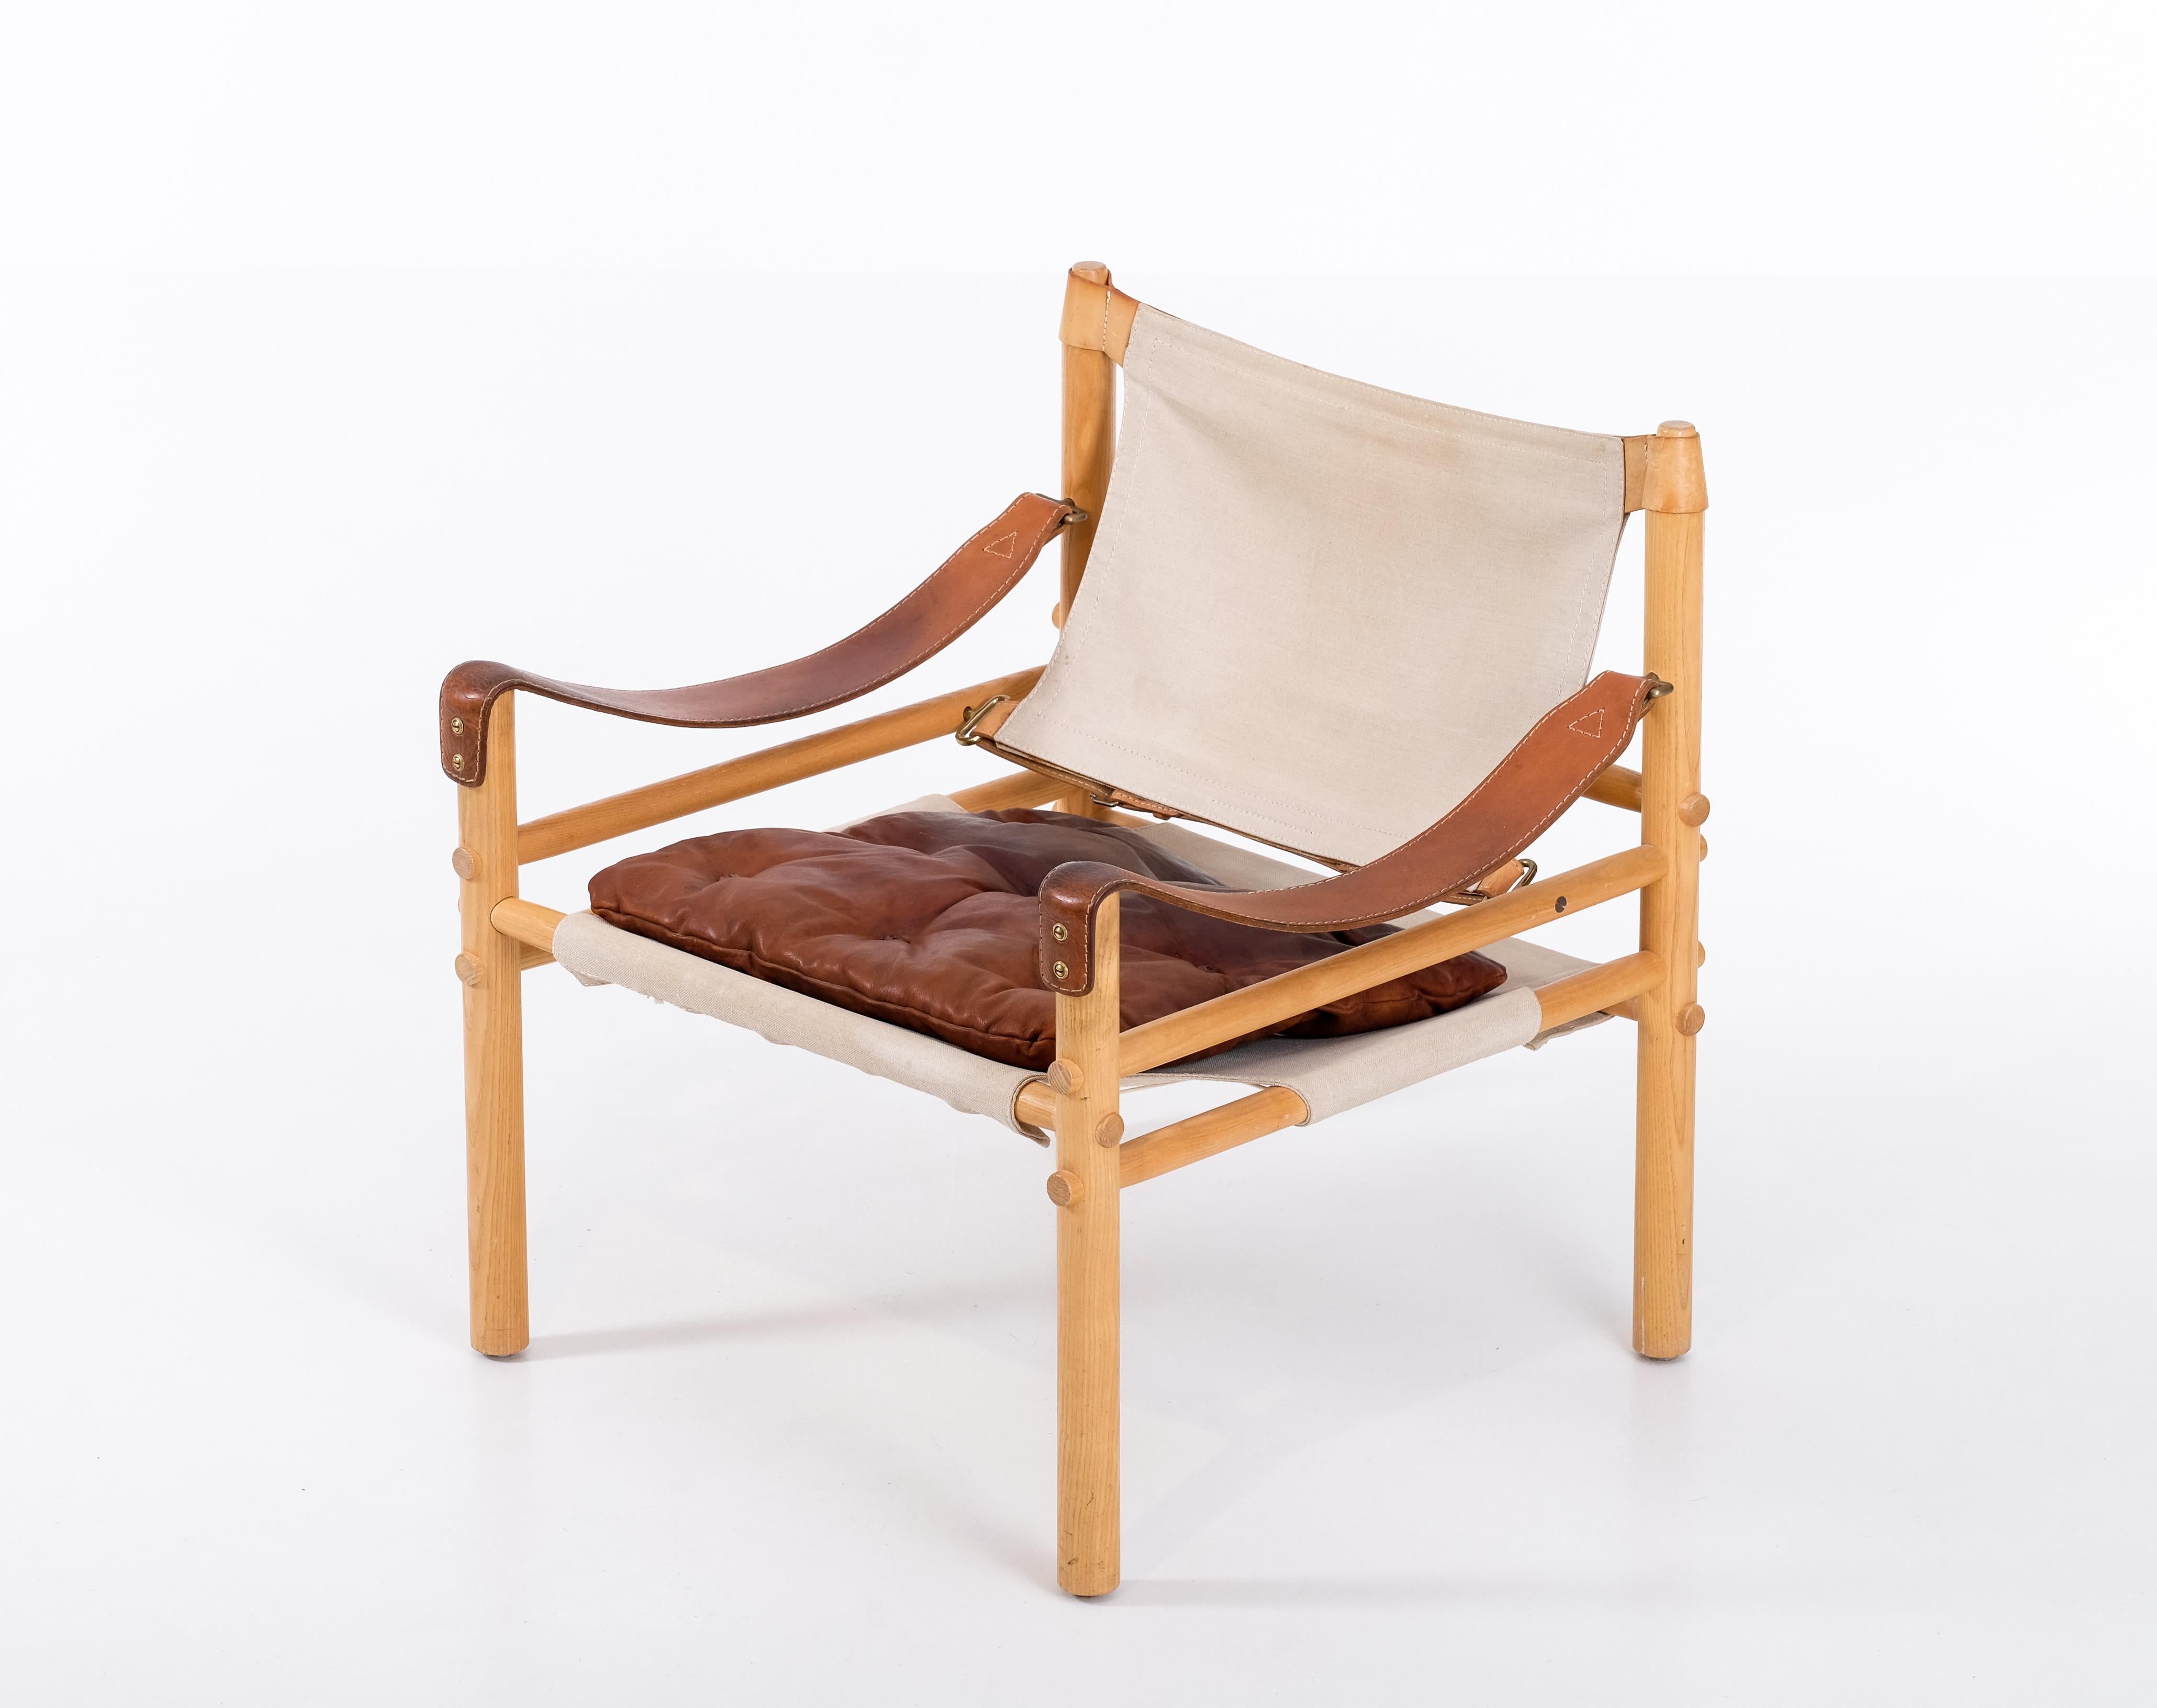 Safari-Stuhl Modell Sirocco in gutem Zustand.
Original Leder und Leinwand. Entworfen von Arne Norell, hergestellt von Arne Norell AB in Aneby, Schweden, 1970er Jahre.





 